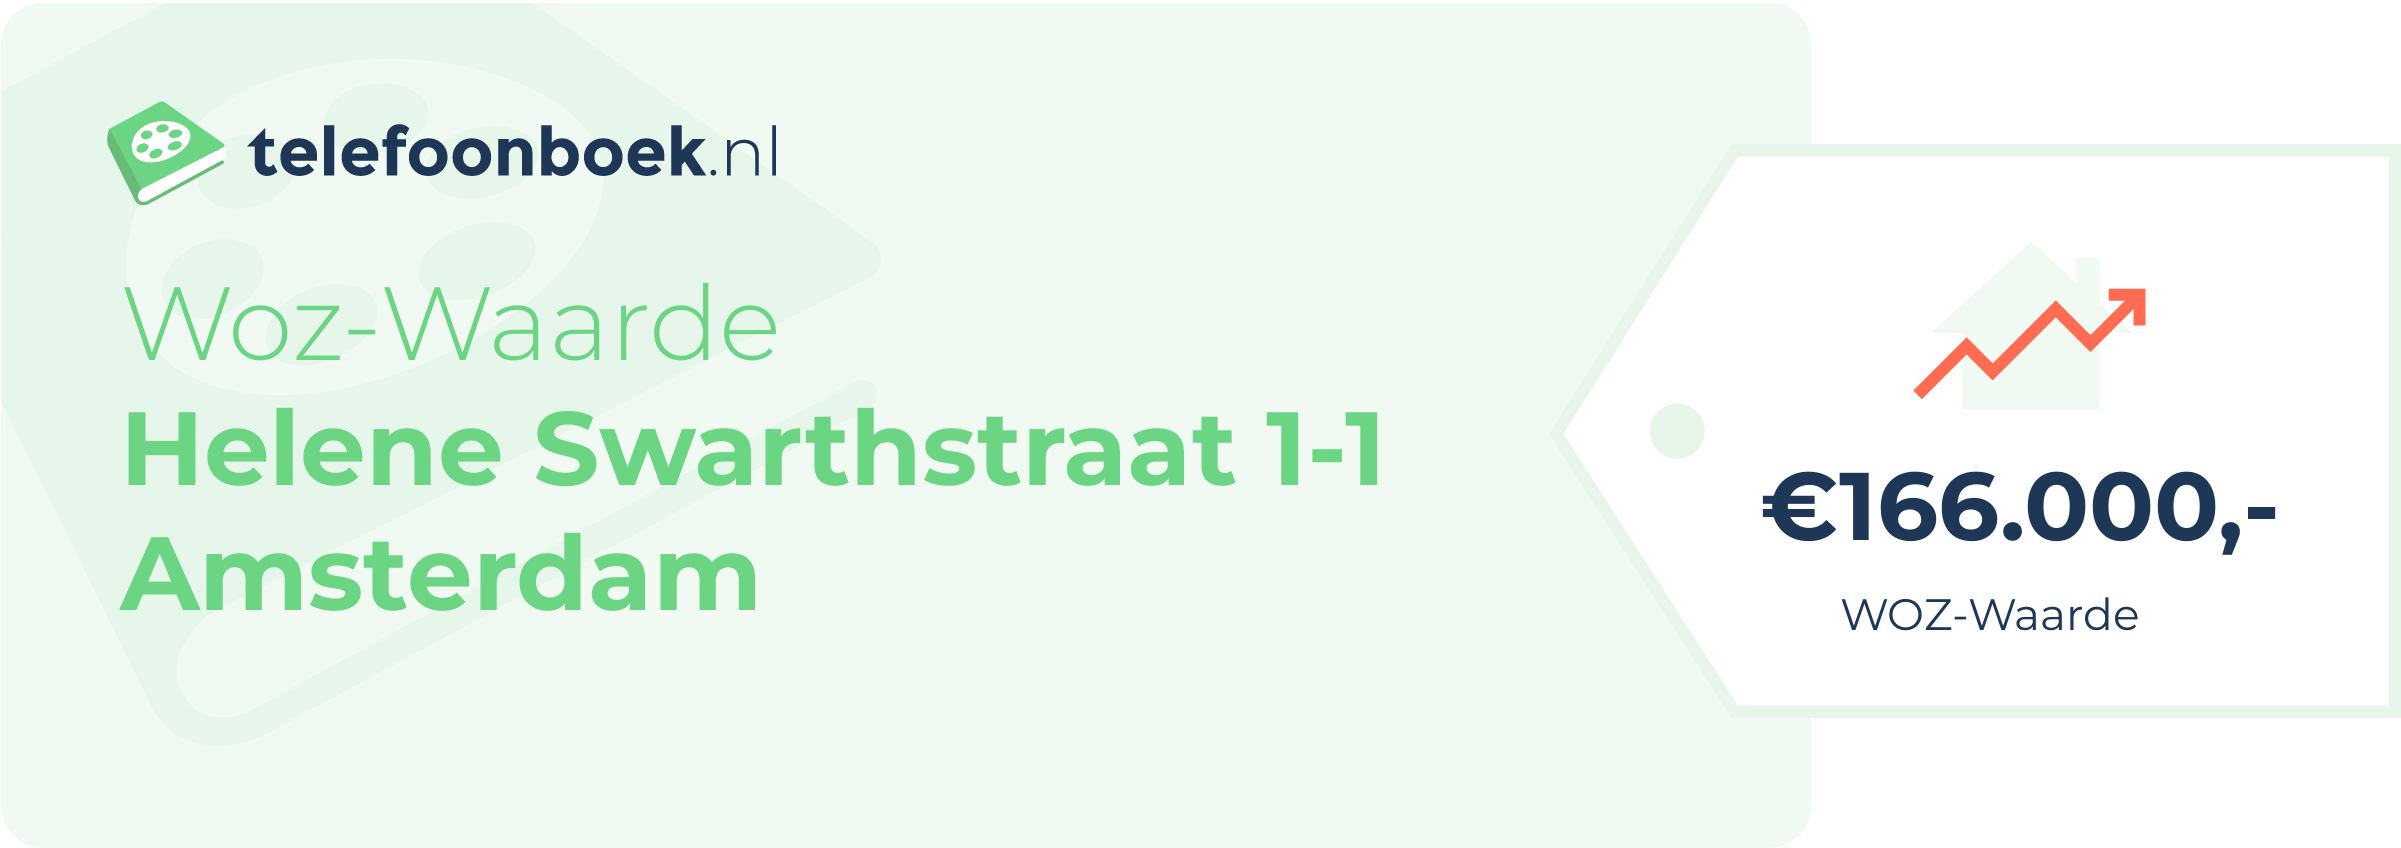 WOZ-waarde Helene Swarthstraat 1-1 Amsterdam